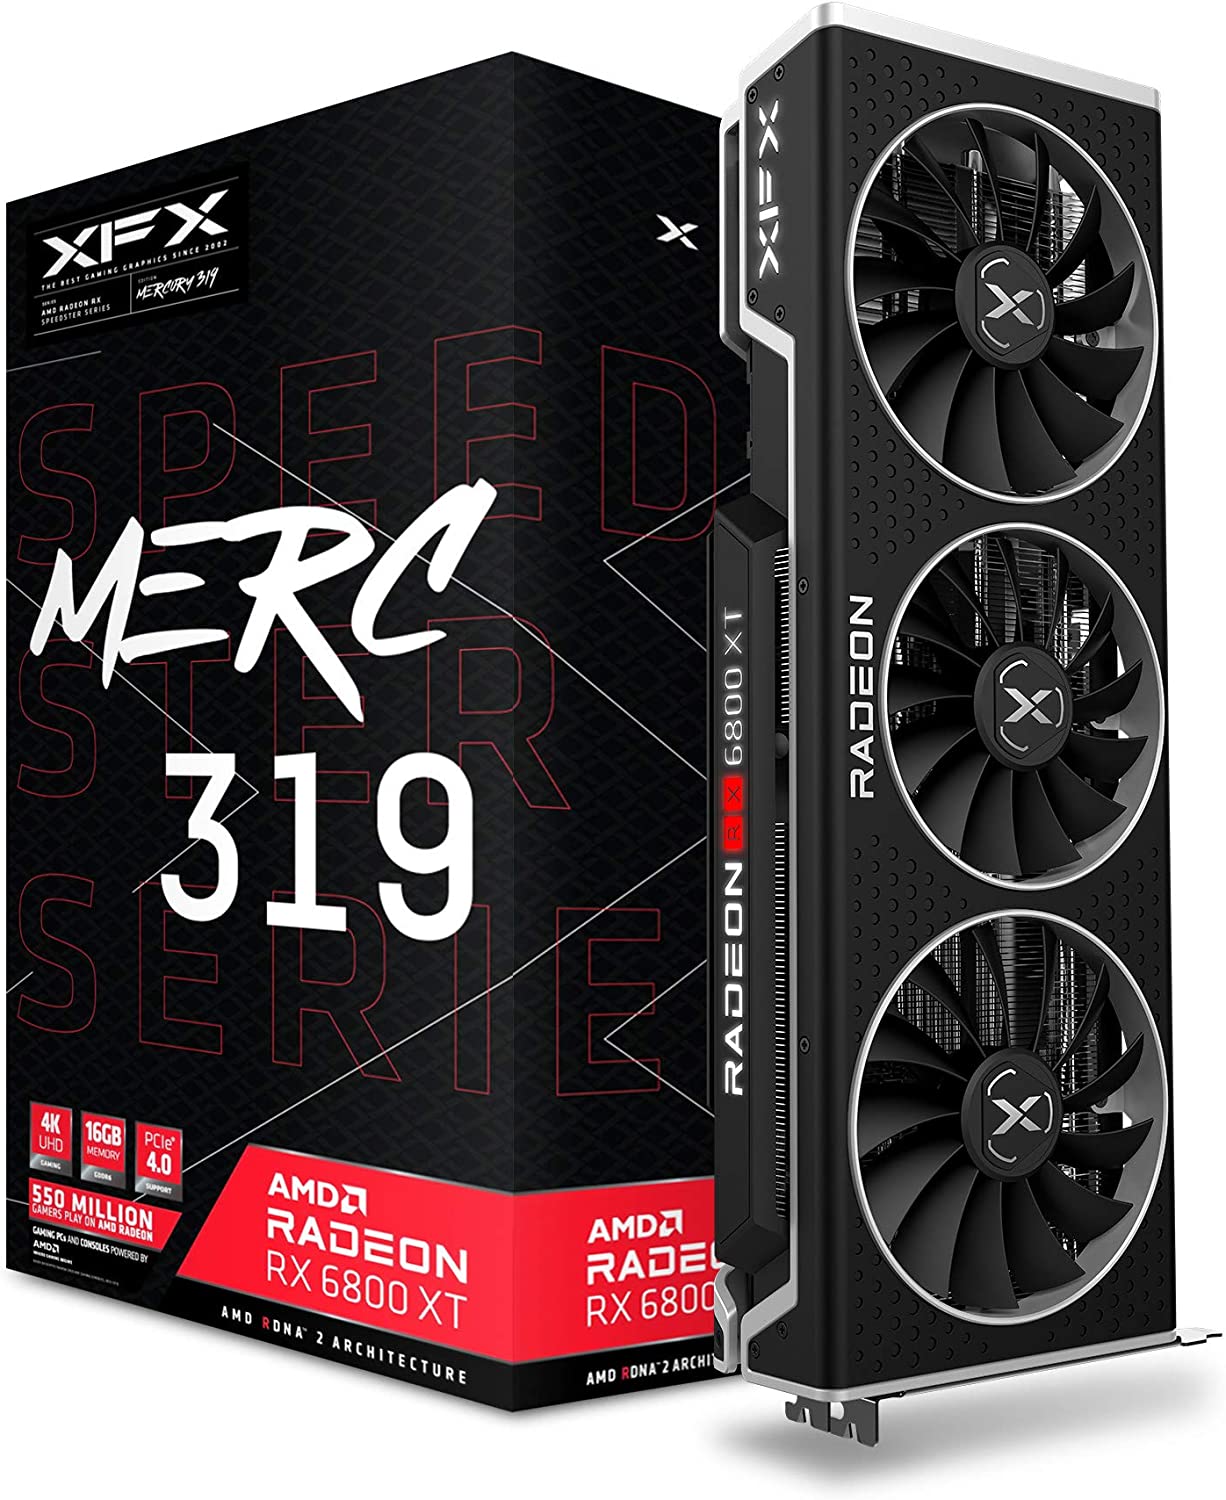 XFX Speedster MERC319 AMD Radeon RX 6800 XT CORE 16GB GPU